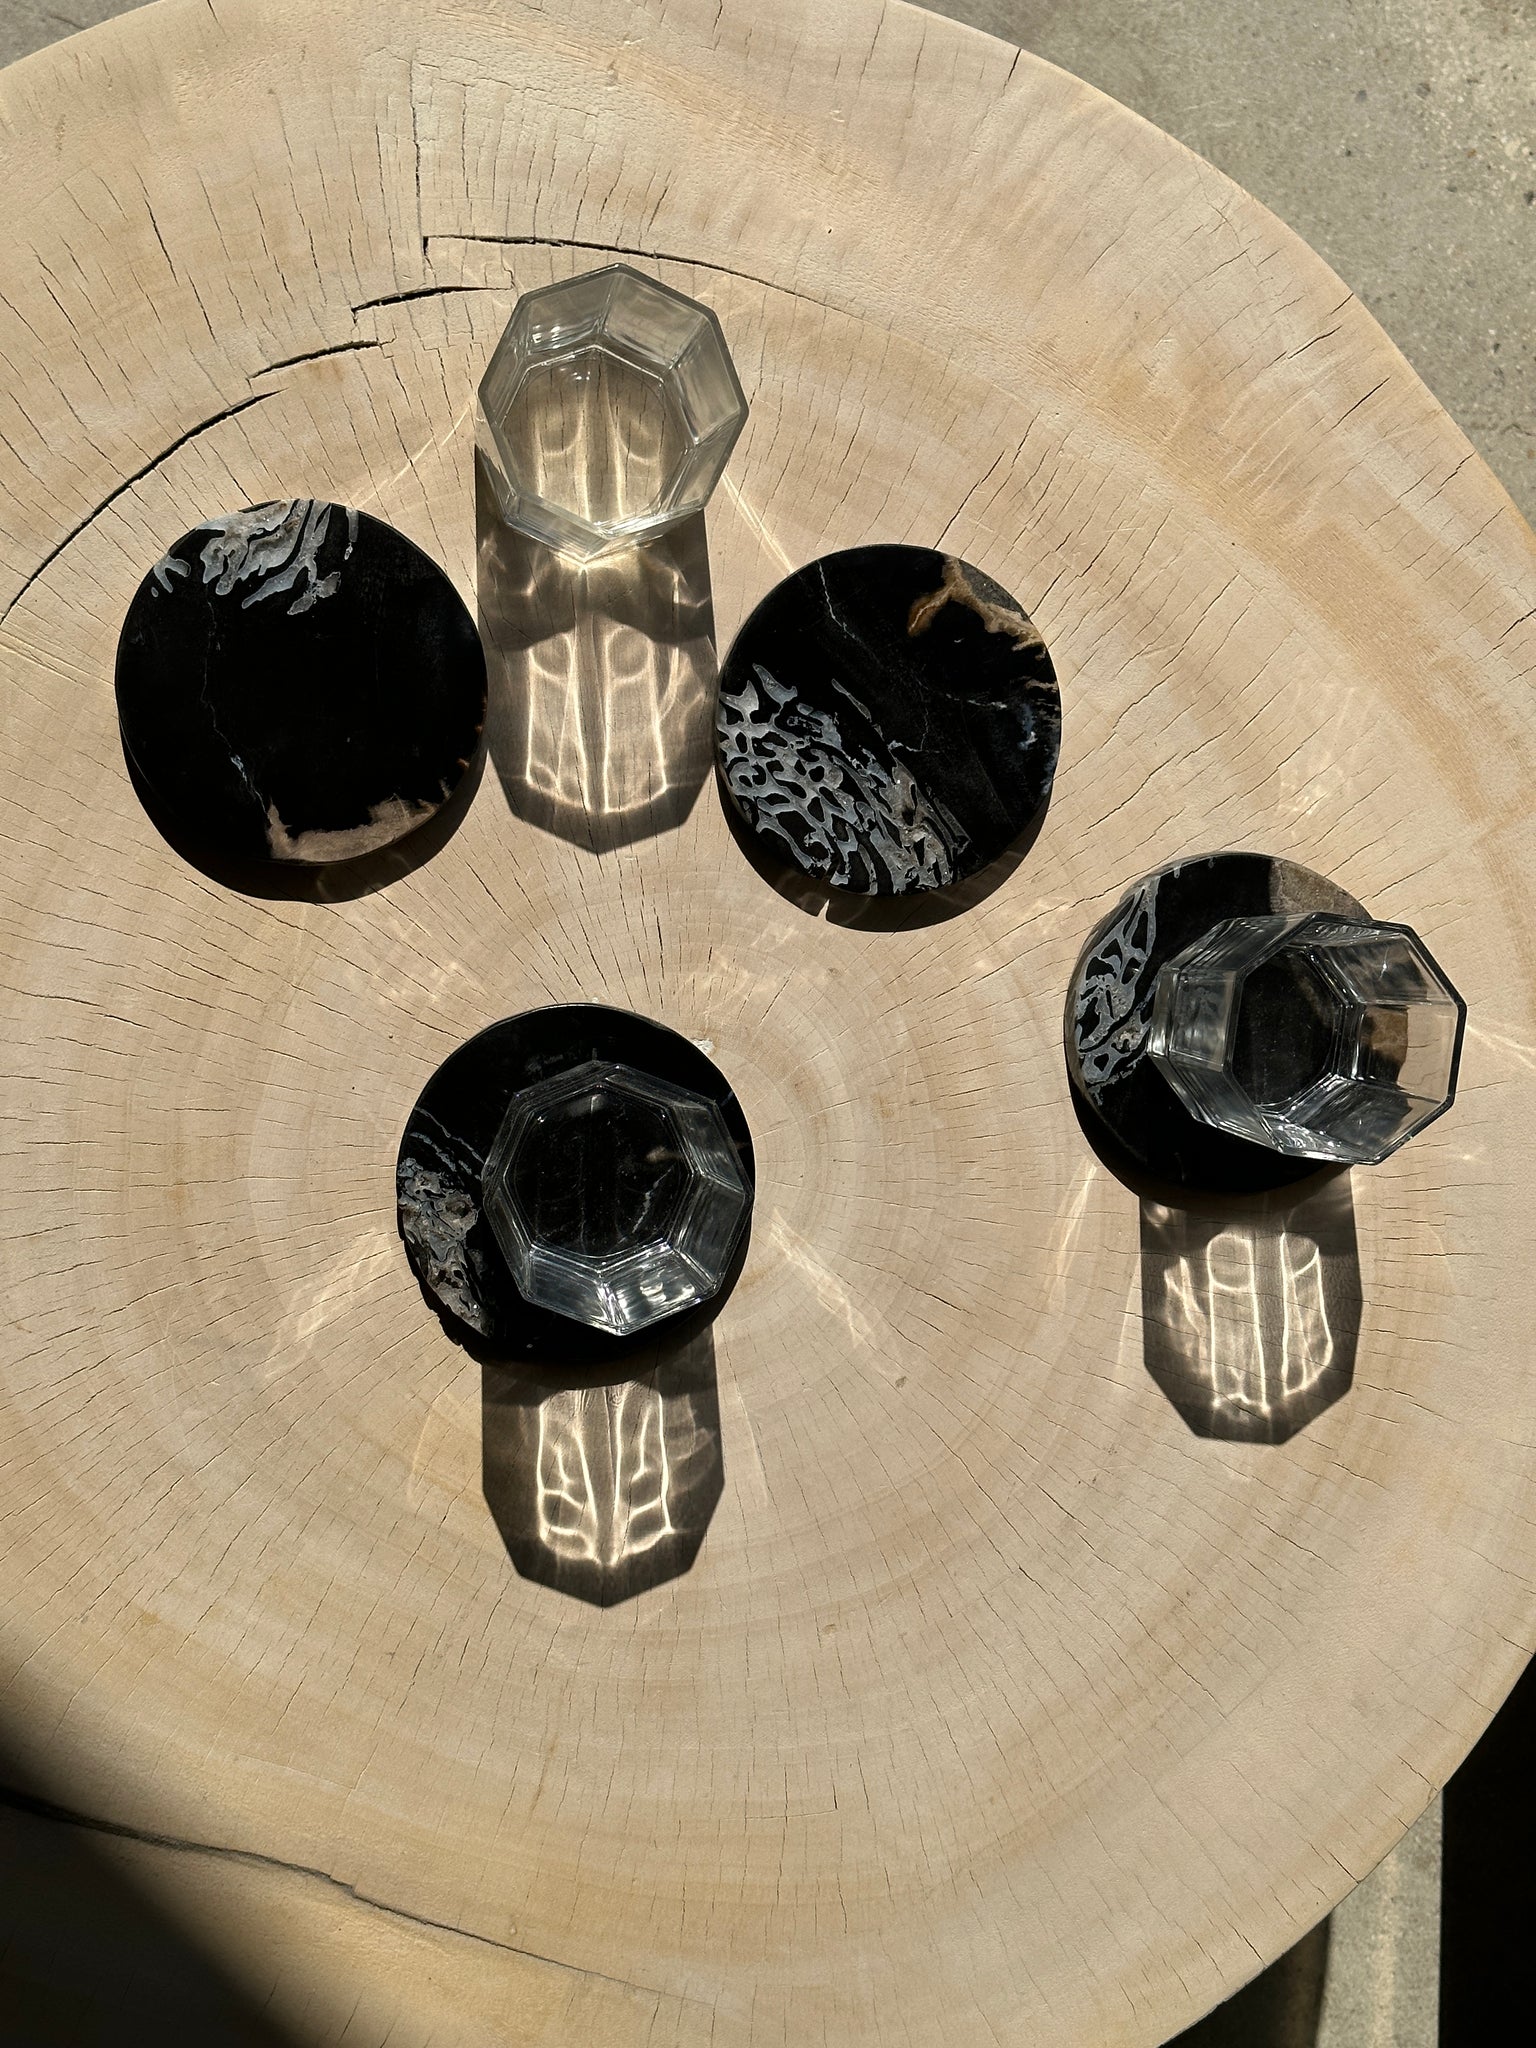 Ensemble de 4 dessous de verre en bois fossilisé (cristaux)